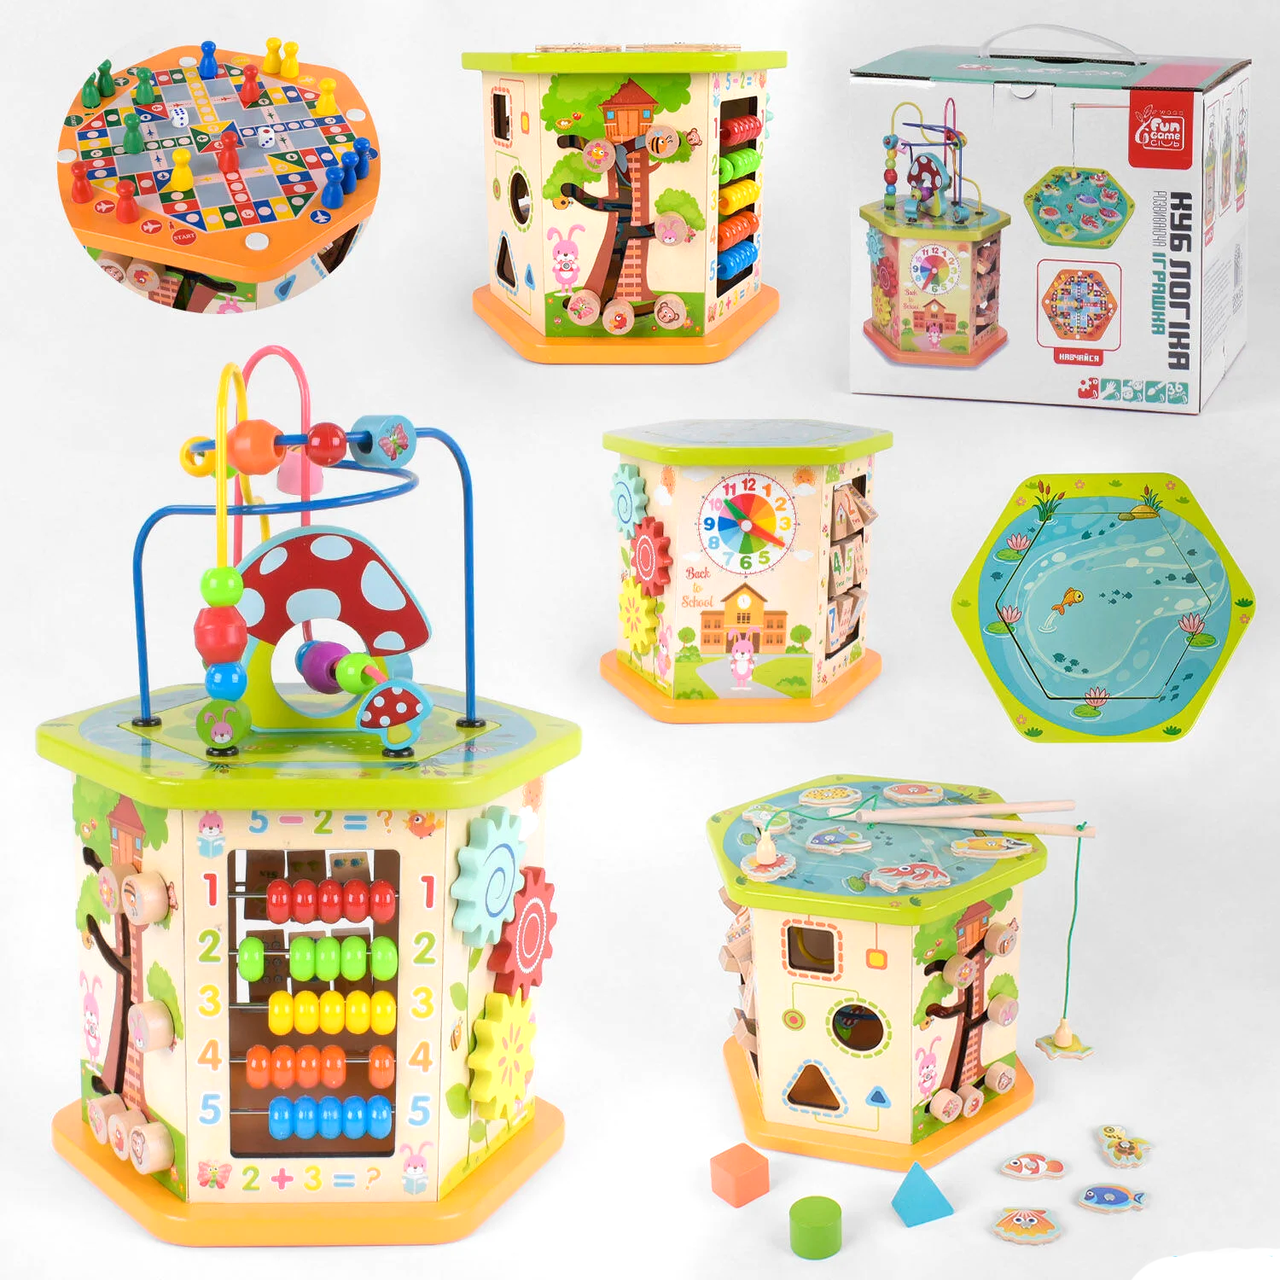 

Детская игрушка Деревянный логический куб 89870 "Fun Game", Разные цвета